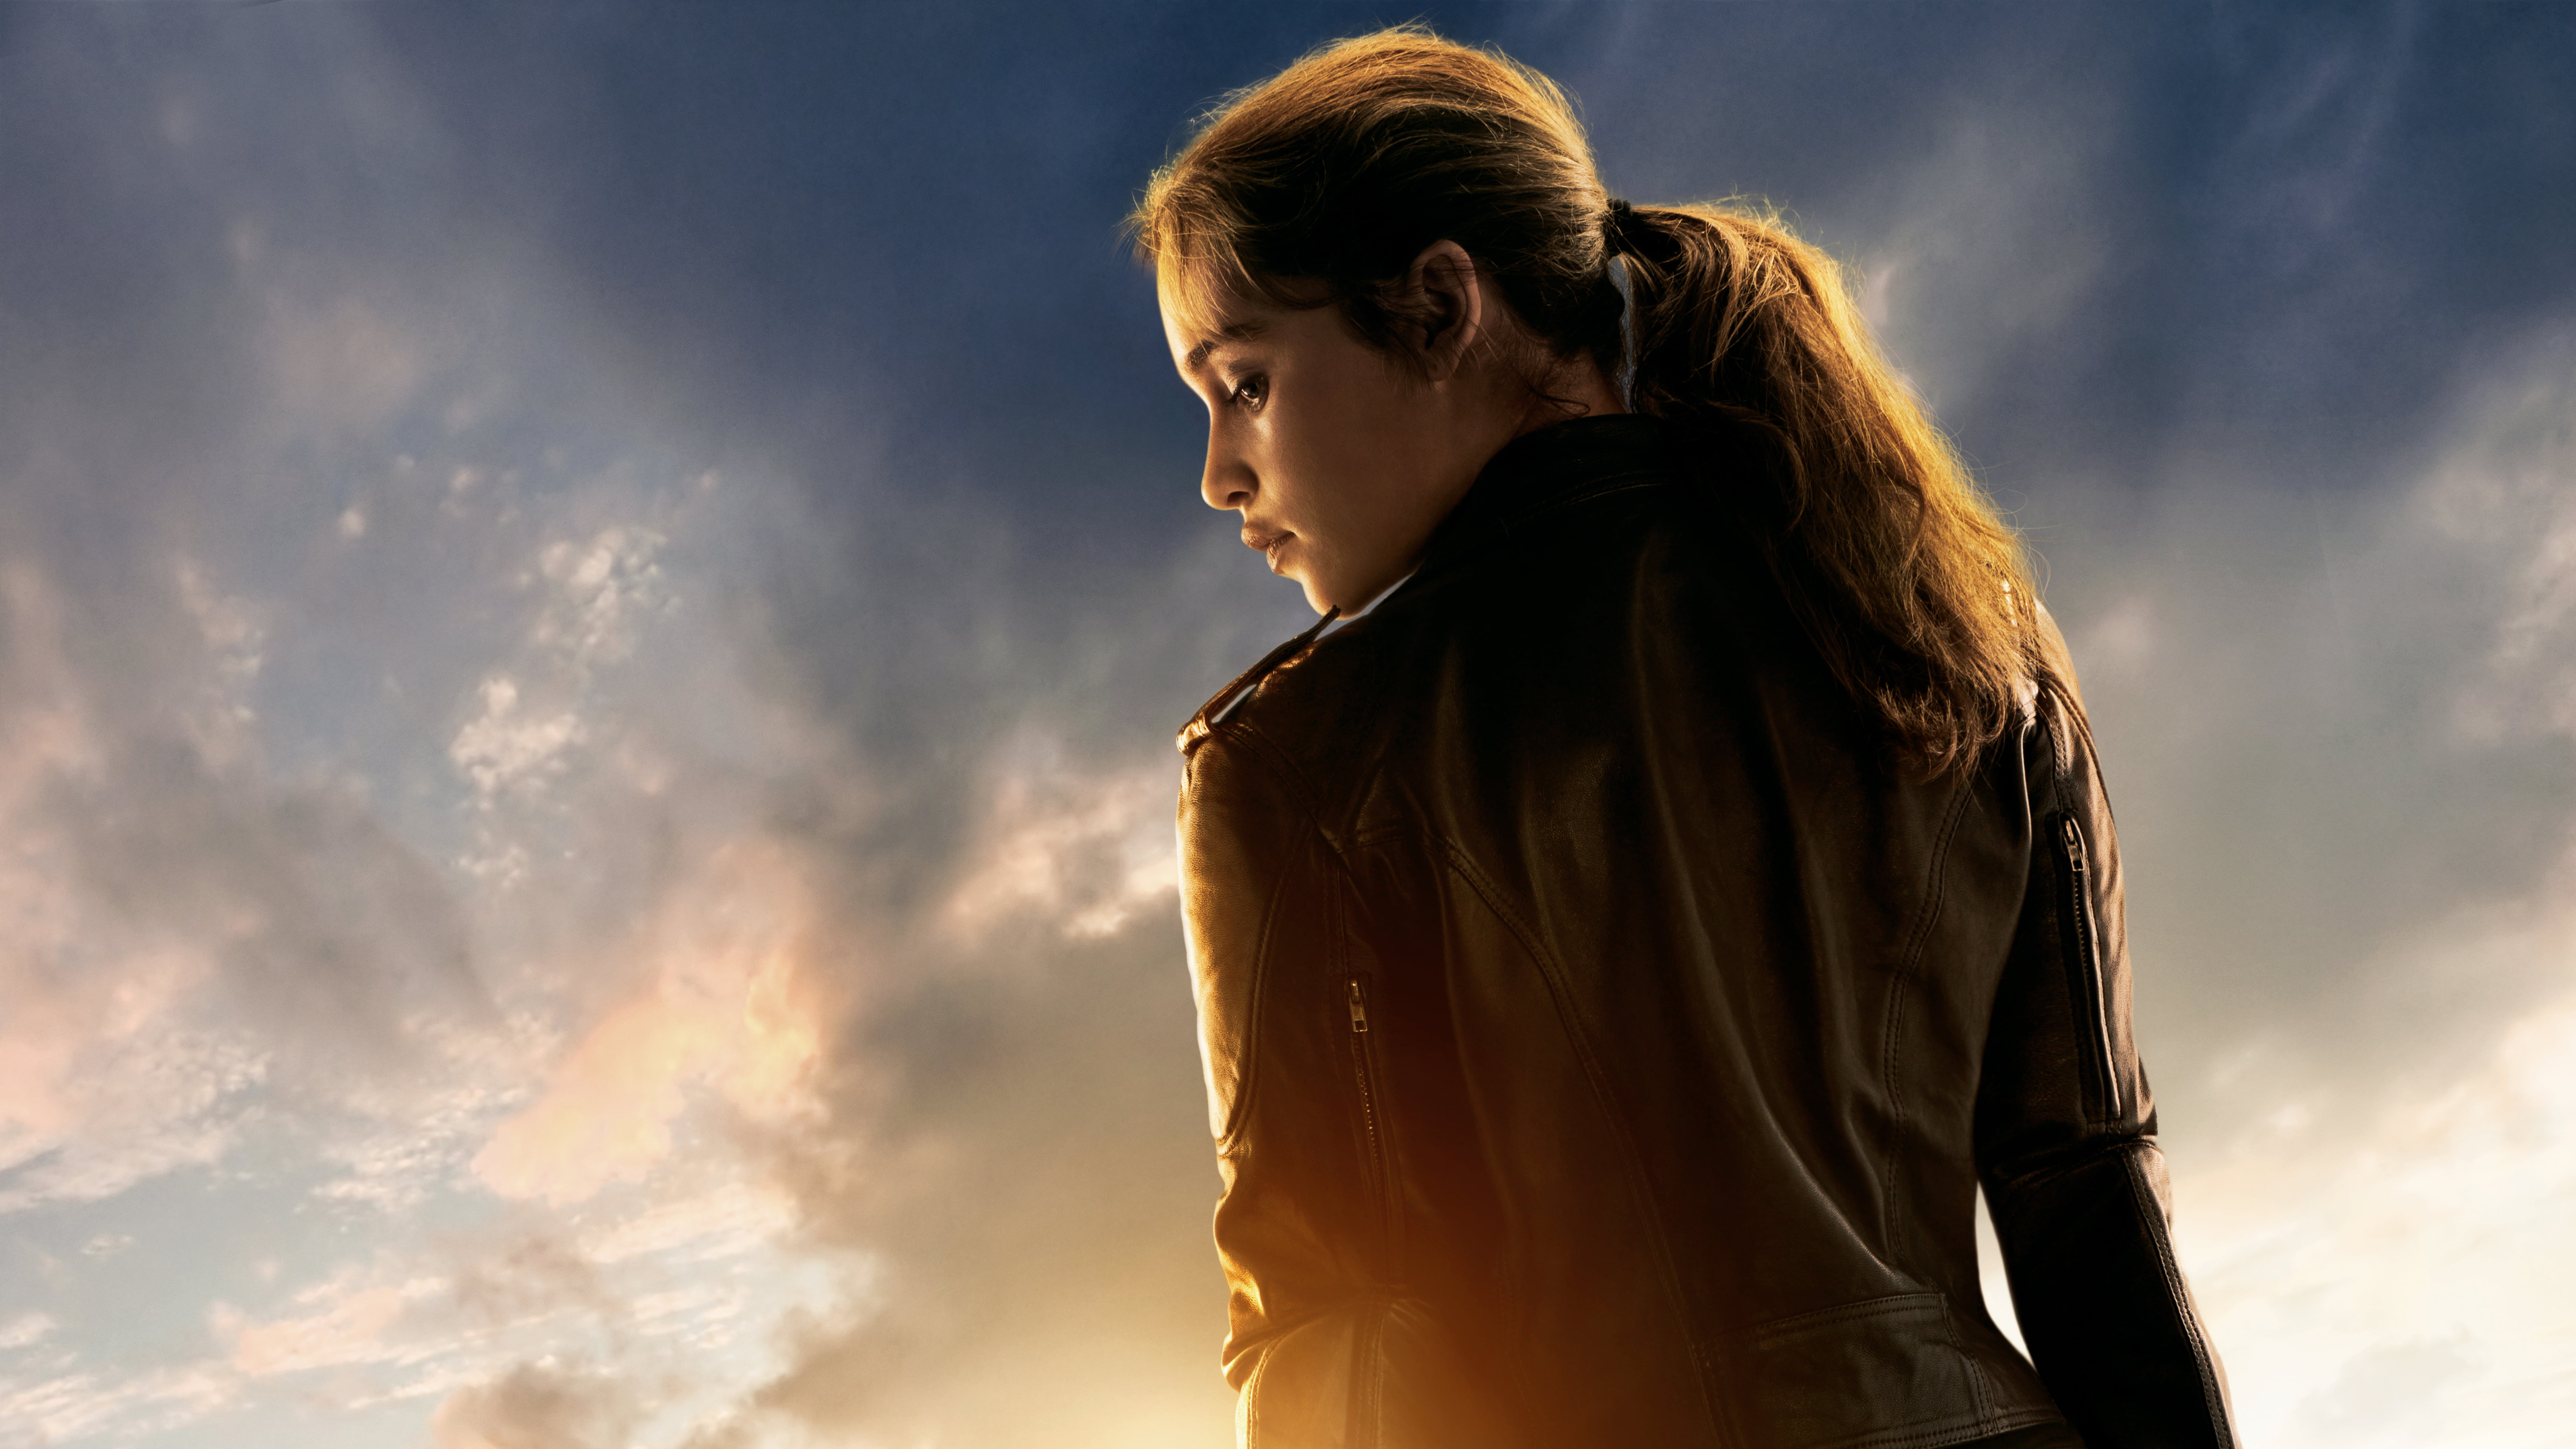 Emilia Clarke, Sarah Connor, Terminator Genisys, 4k - Terminator Genisys Poster Emilia Clarke , HD Wallpaper & Backgrounds